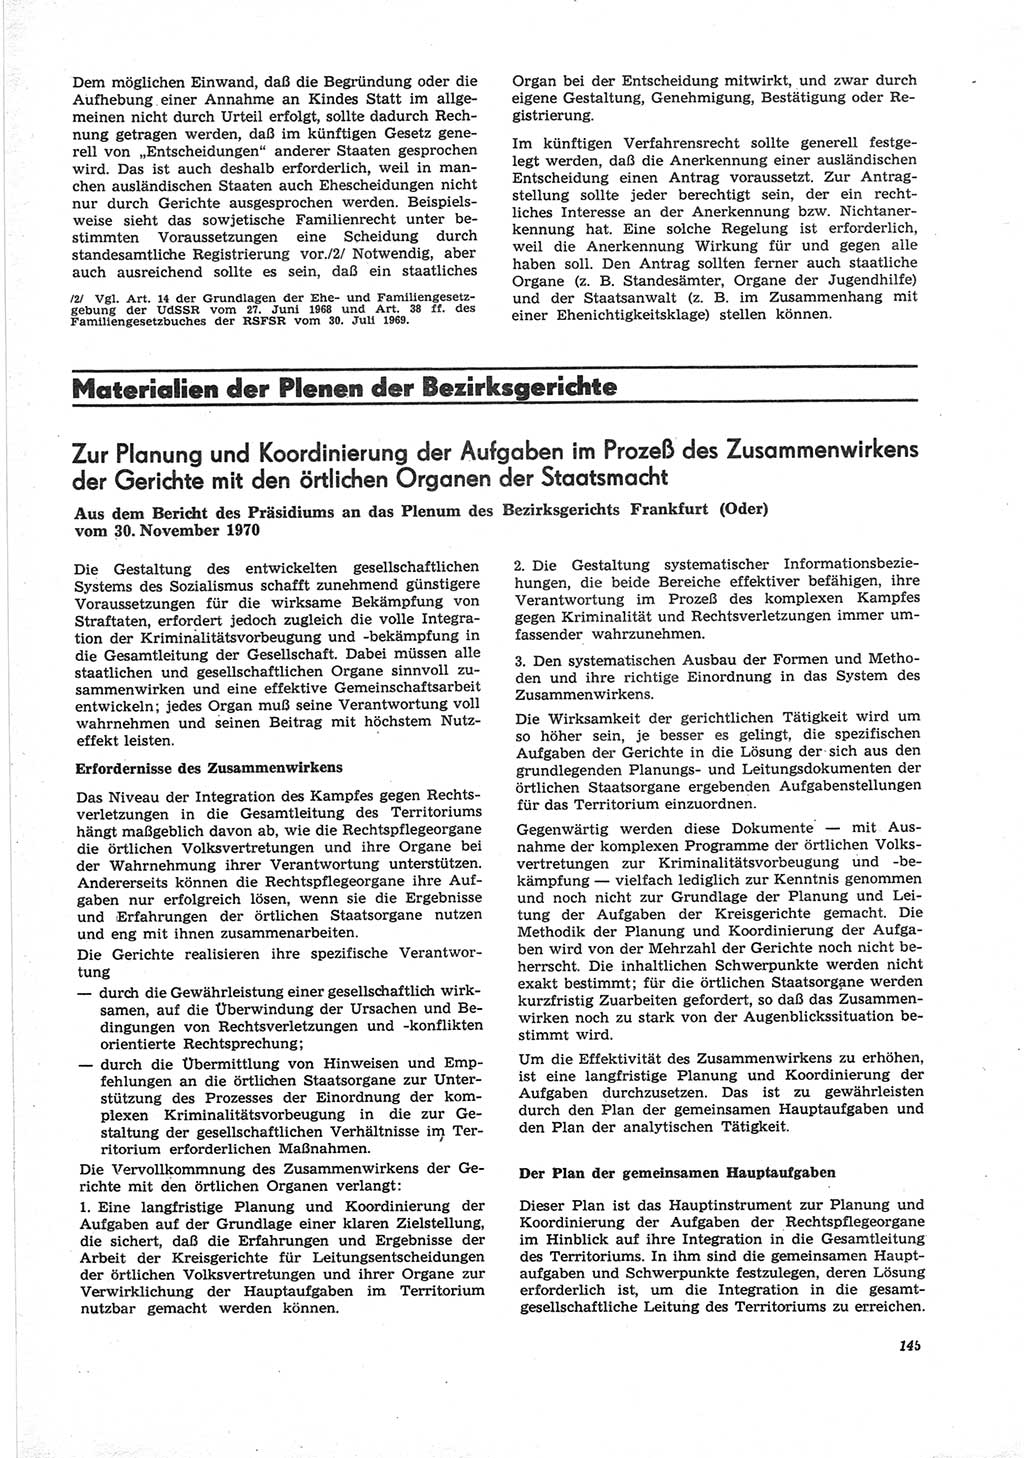 Neue Justiz (NJ), Zeitschrift für Recht und Rechtswissenschaft [Deutsche Demokratische Republik (DDR)], 25. Jahrgang 1971, Seite 145 (NJ DDR 1971, S. 145)